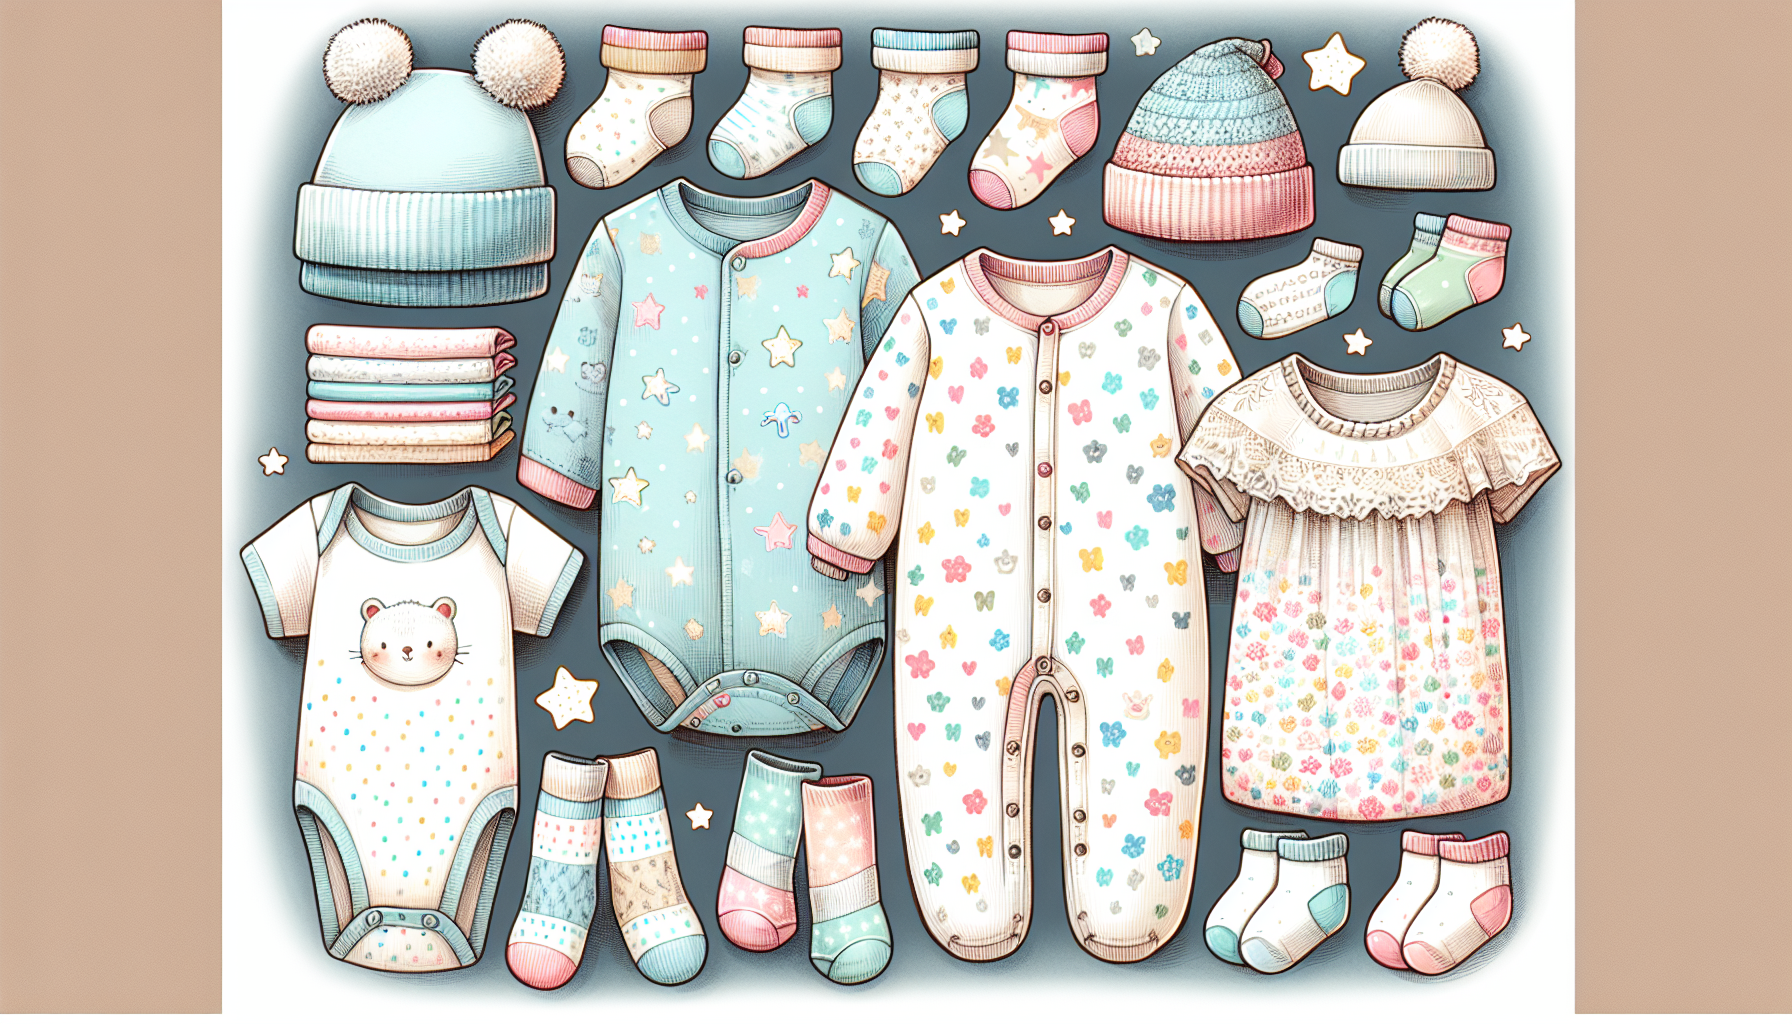 Illustration of baby clothing basics